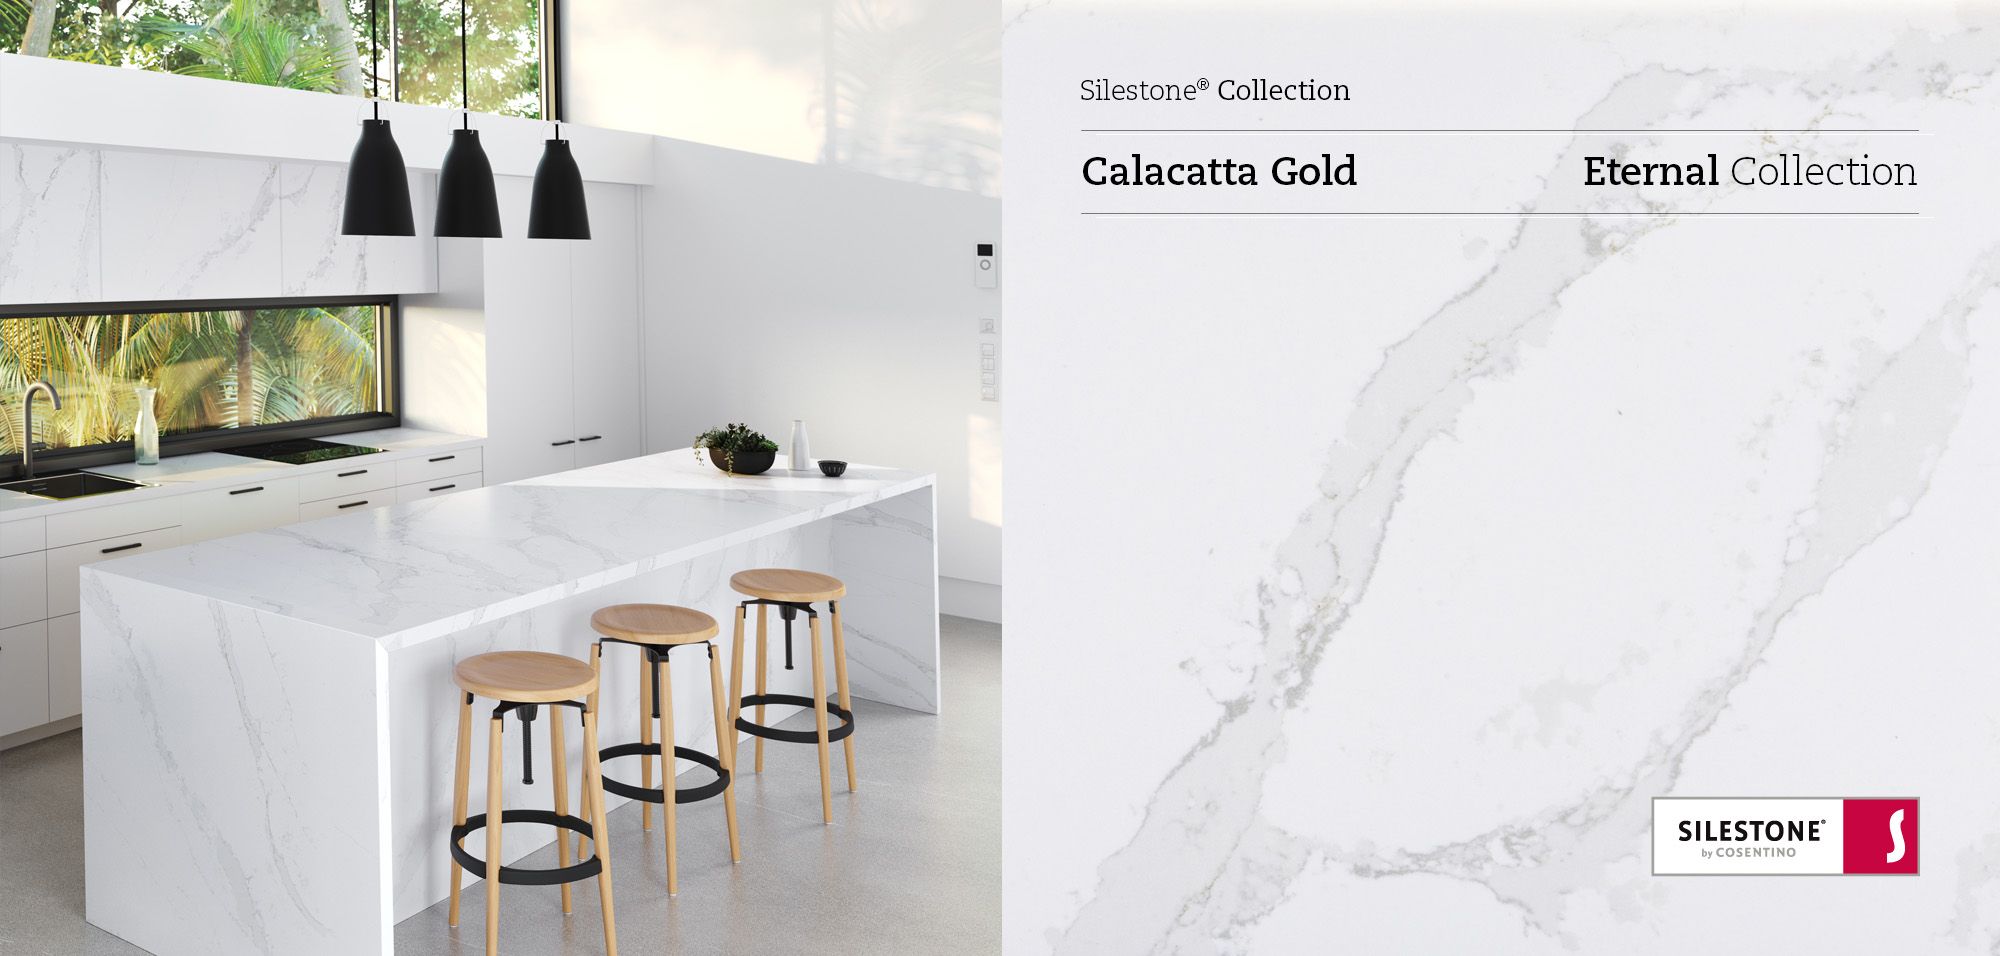 Calacatta Gold Quartz kitchen worktopAffordable pricesSample 